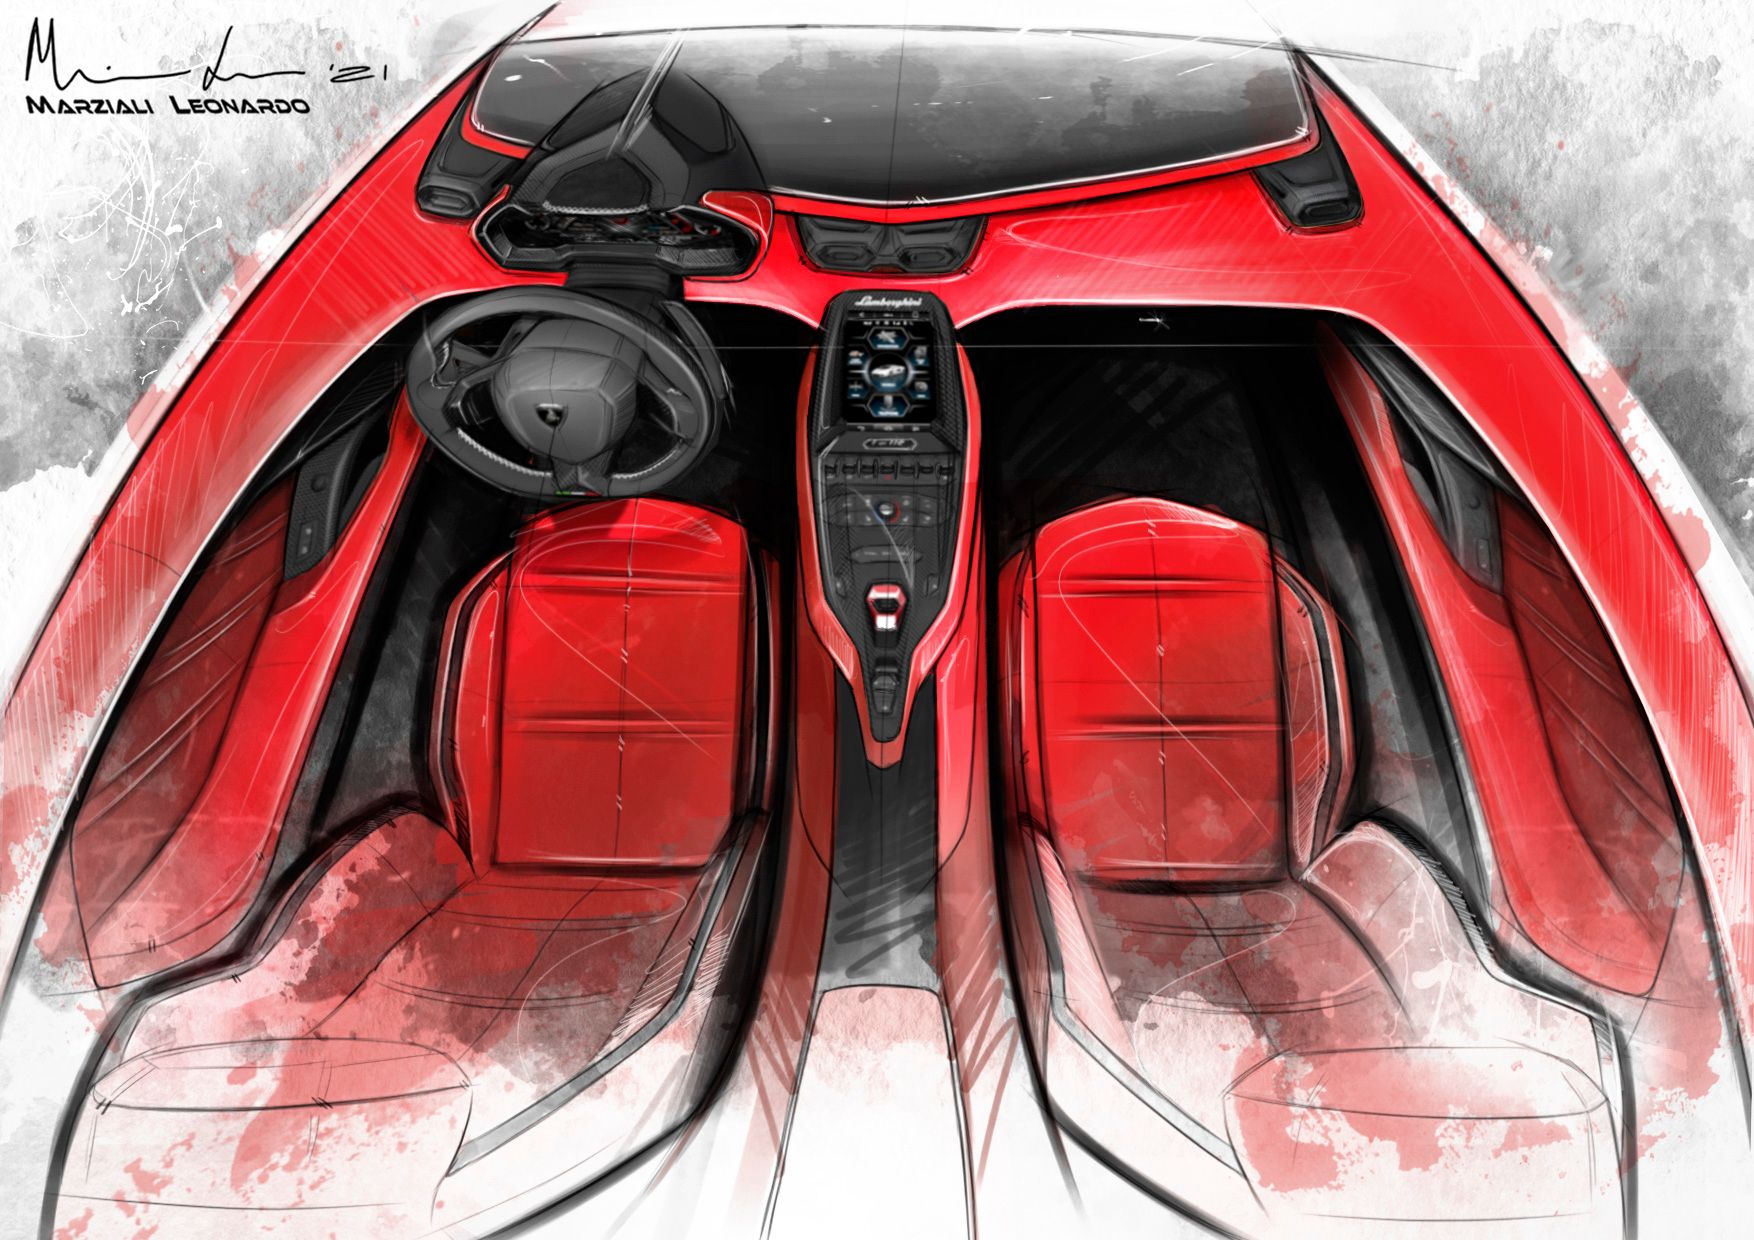 2021 Lamborghini Countach LPI 800-4